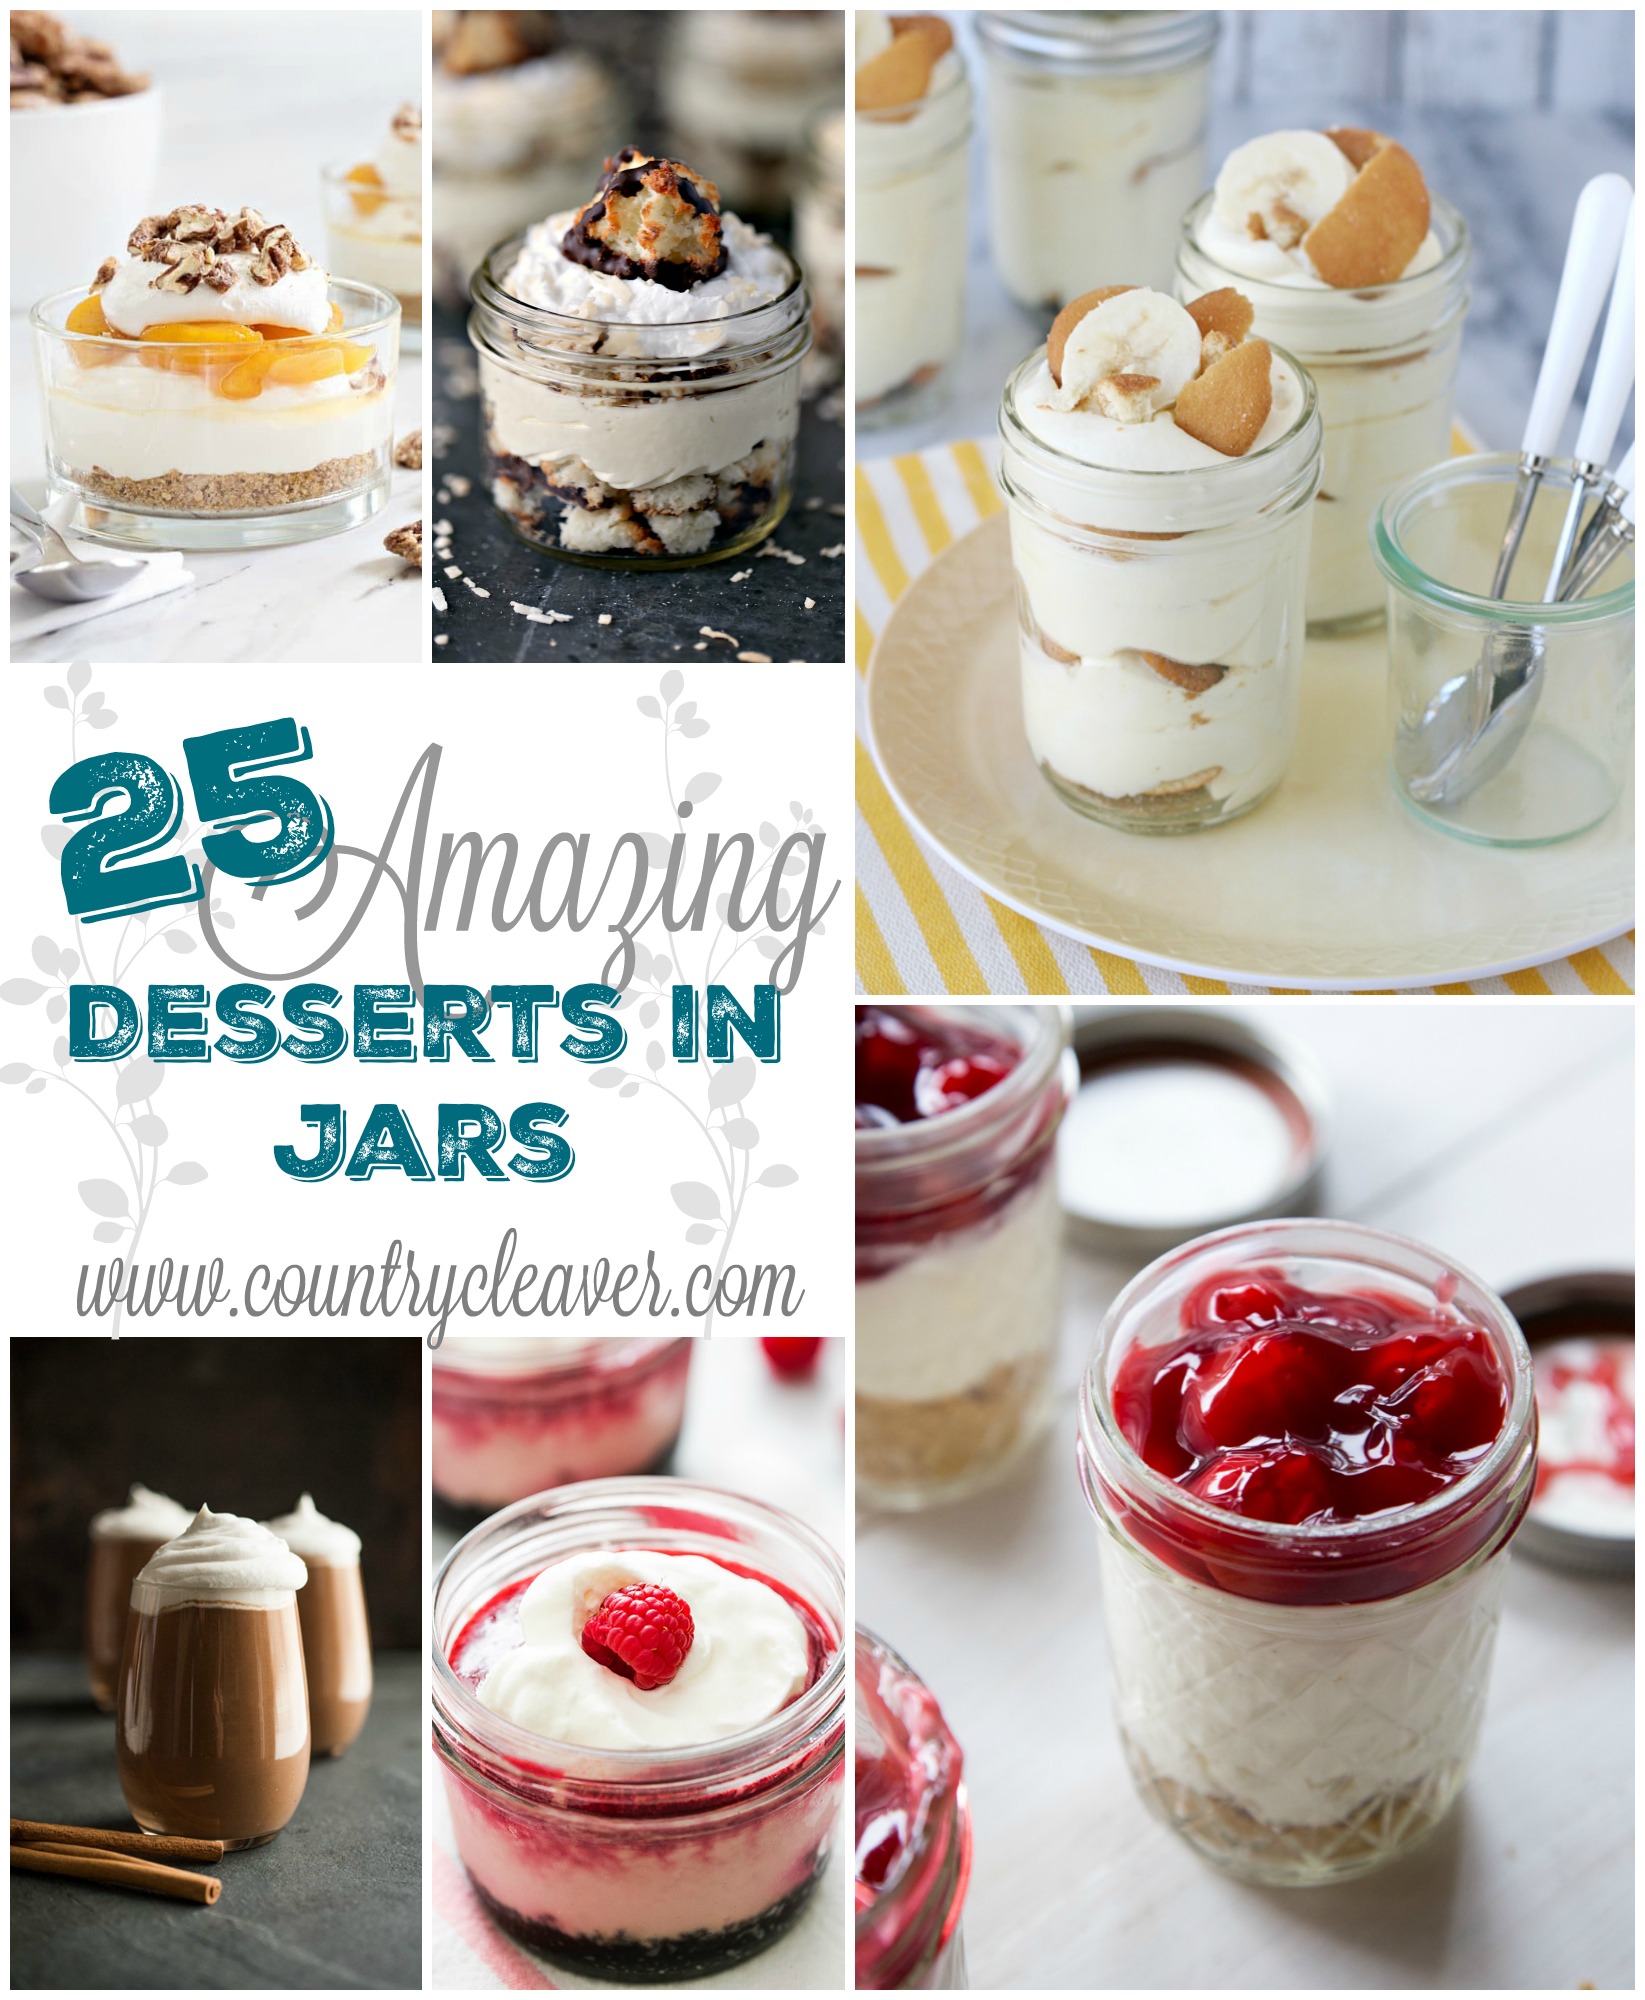 25 Amazing NO BAKE Desserts in Jars